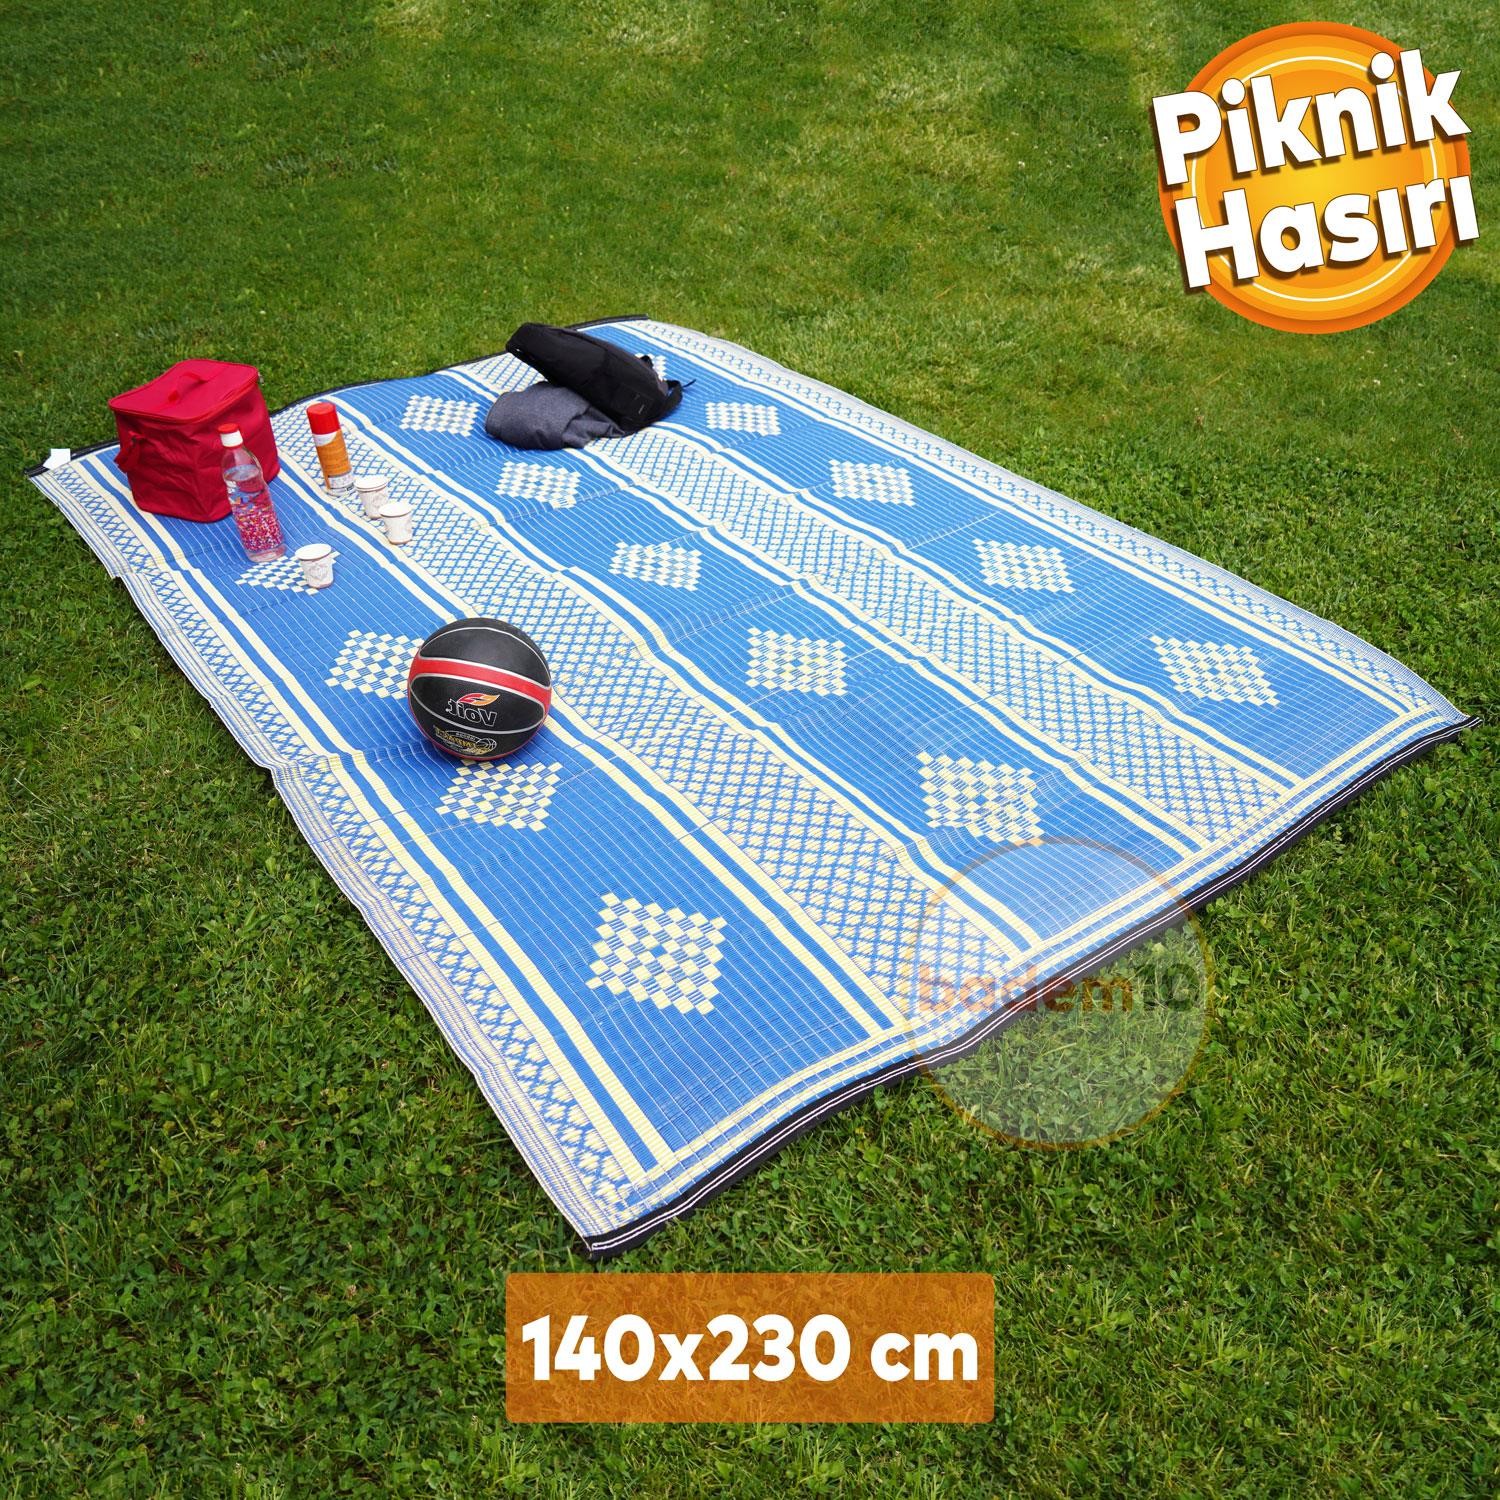 Plastik Hasır Halı Kilim Piknik Cami Park Plaj Bahçe Balkon Teras Kamp Outdoor Karavan 140 x 230 cm